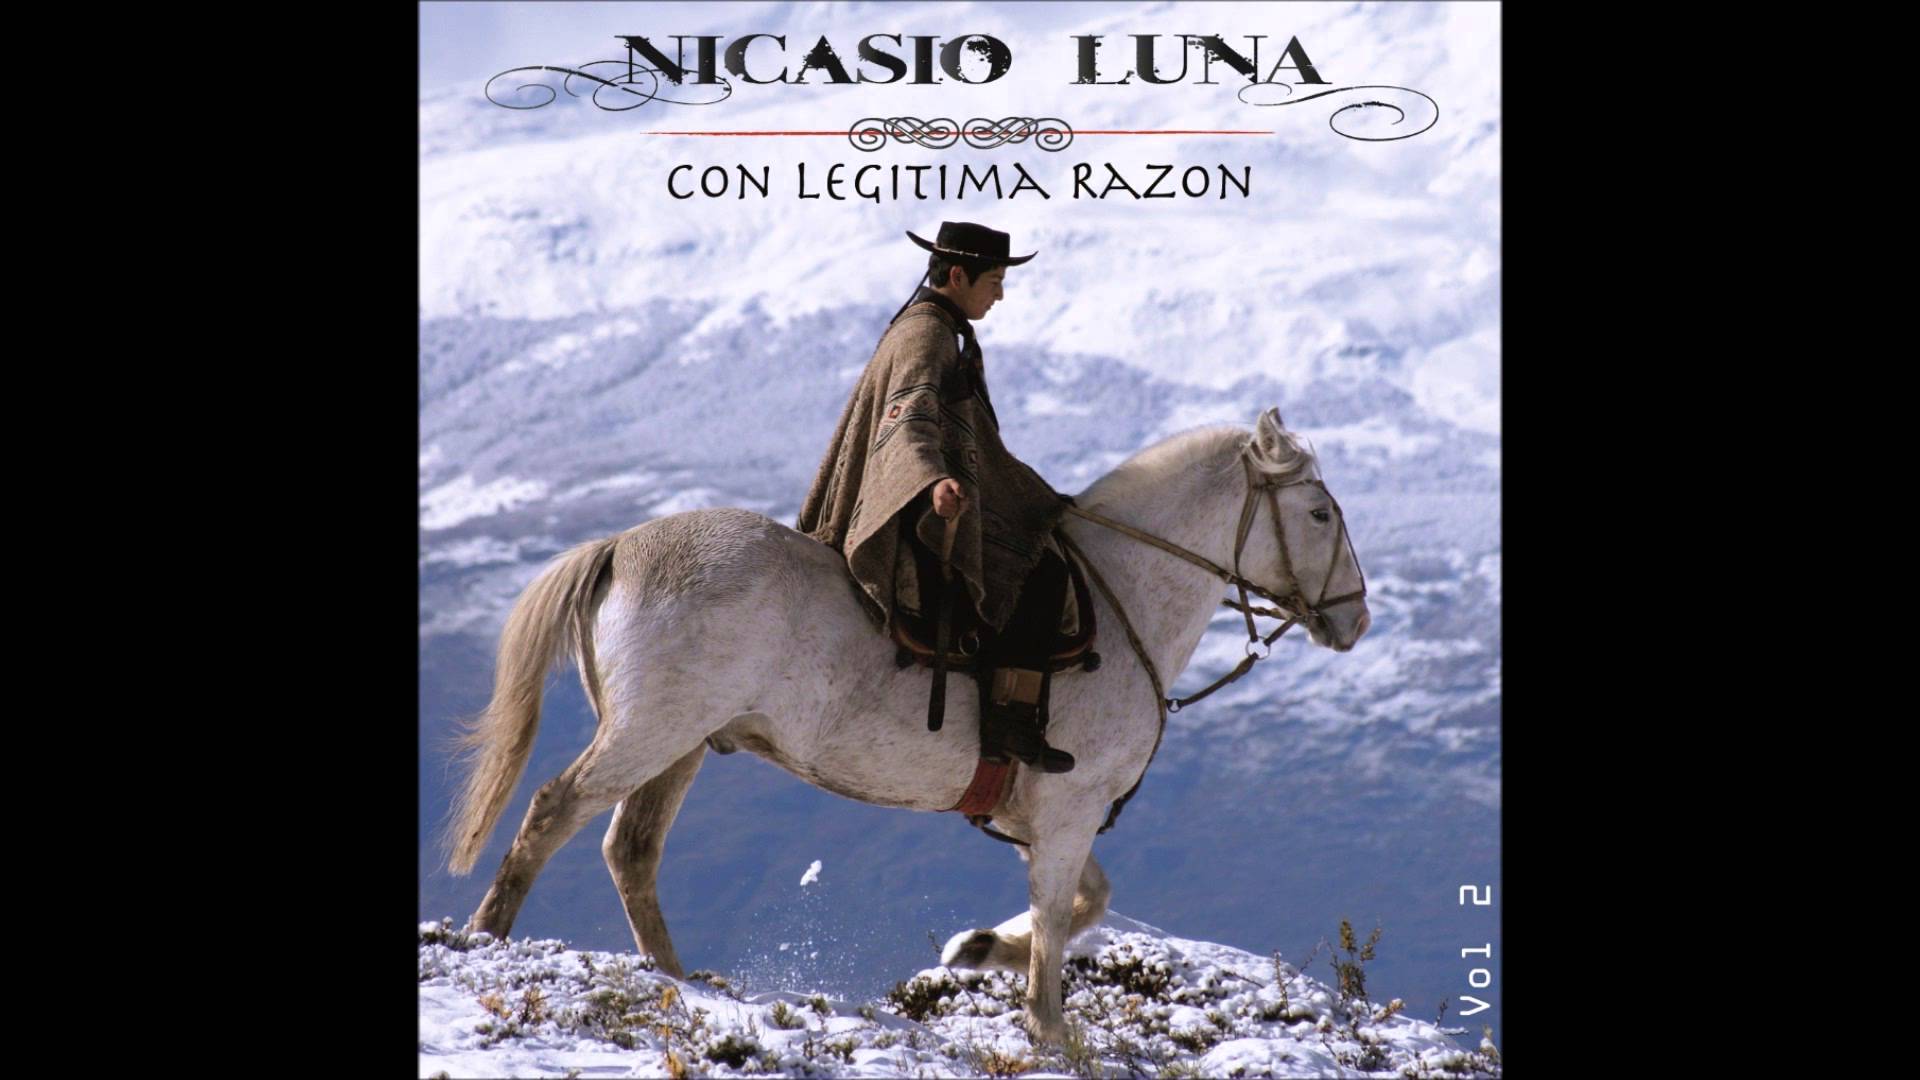 Nicasio Luna